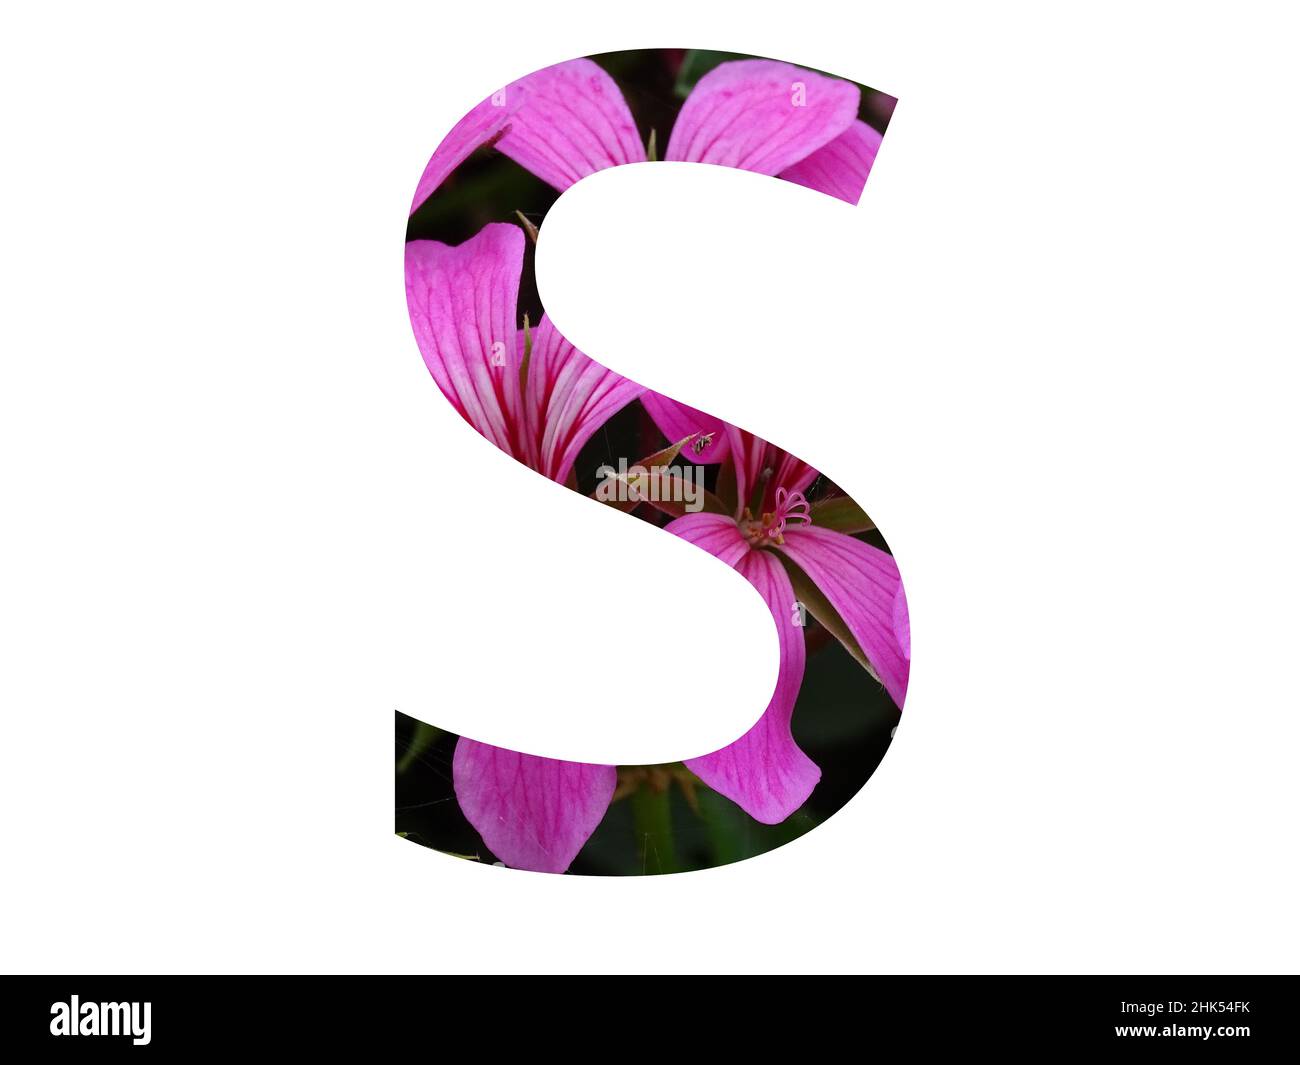 Lettre S de l'alphabet faite d'une fleur rose de pélargonium, isolée sur fond blanc Banque D'Images